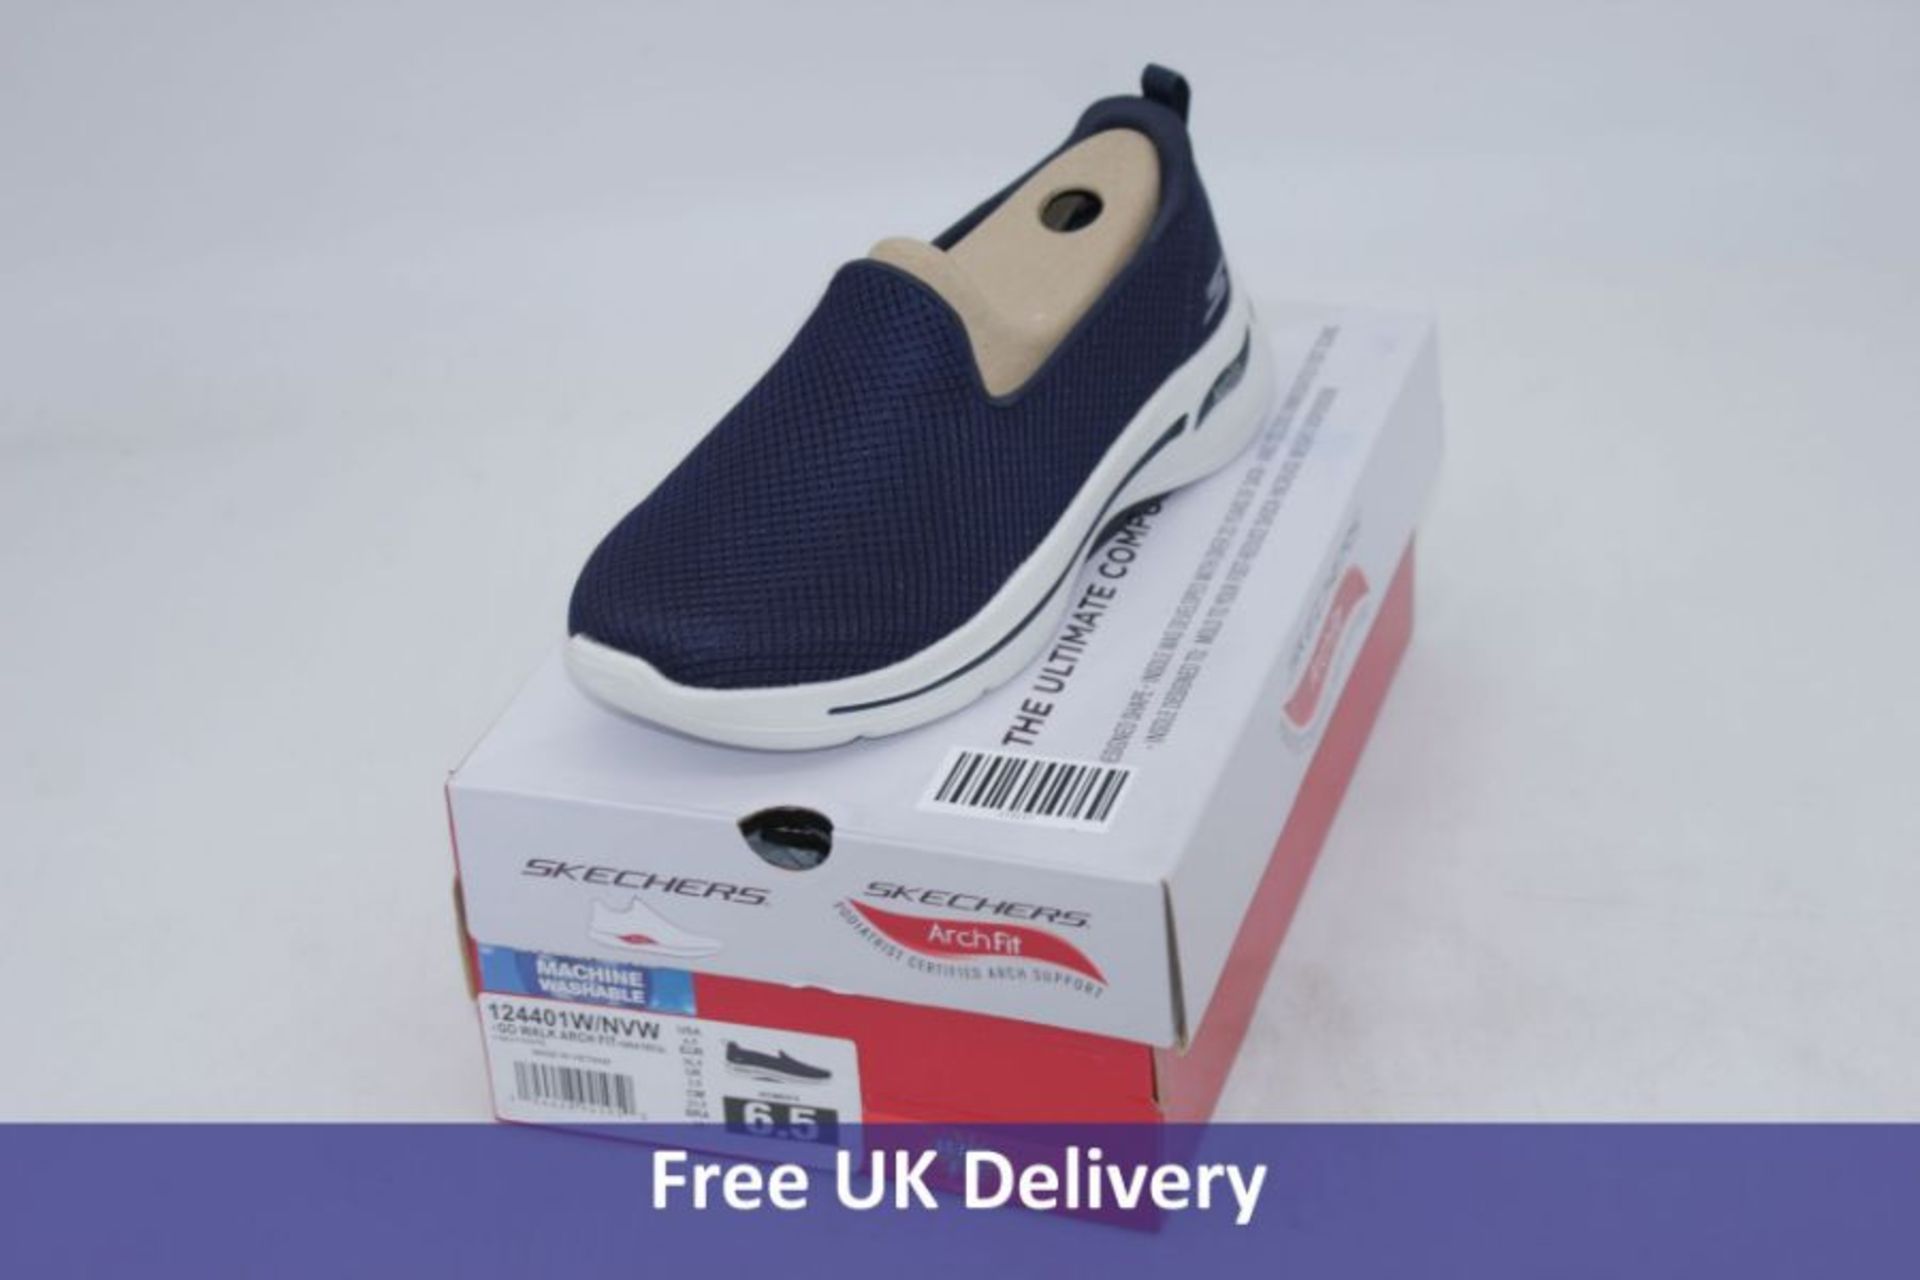 Skechers Women's Go Walk Arch Fit Walking Shoes, Navy/White, UK 3.5